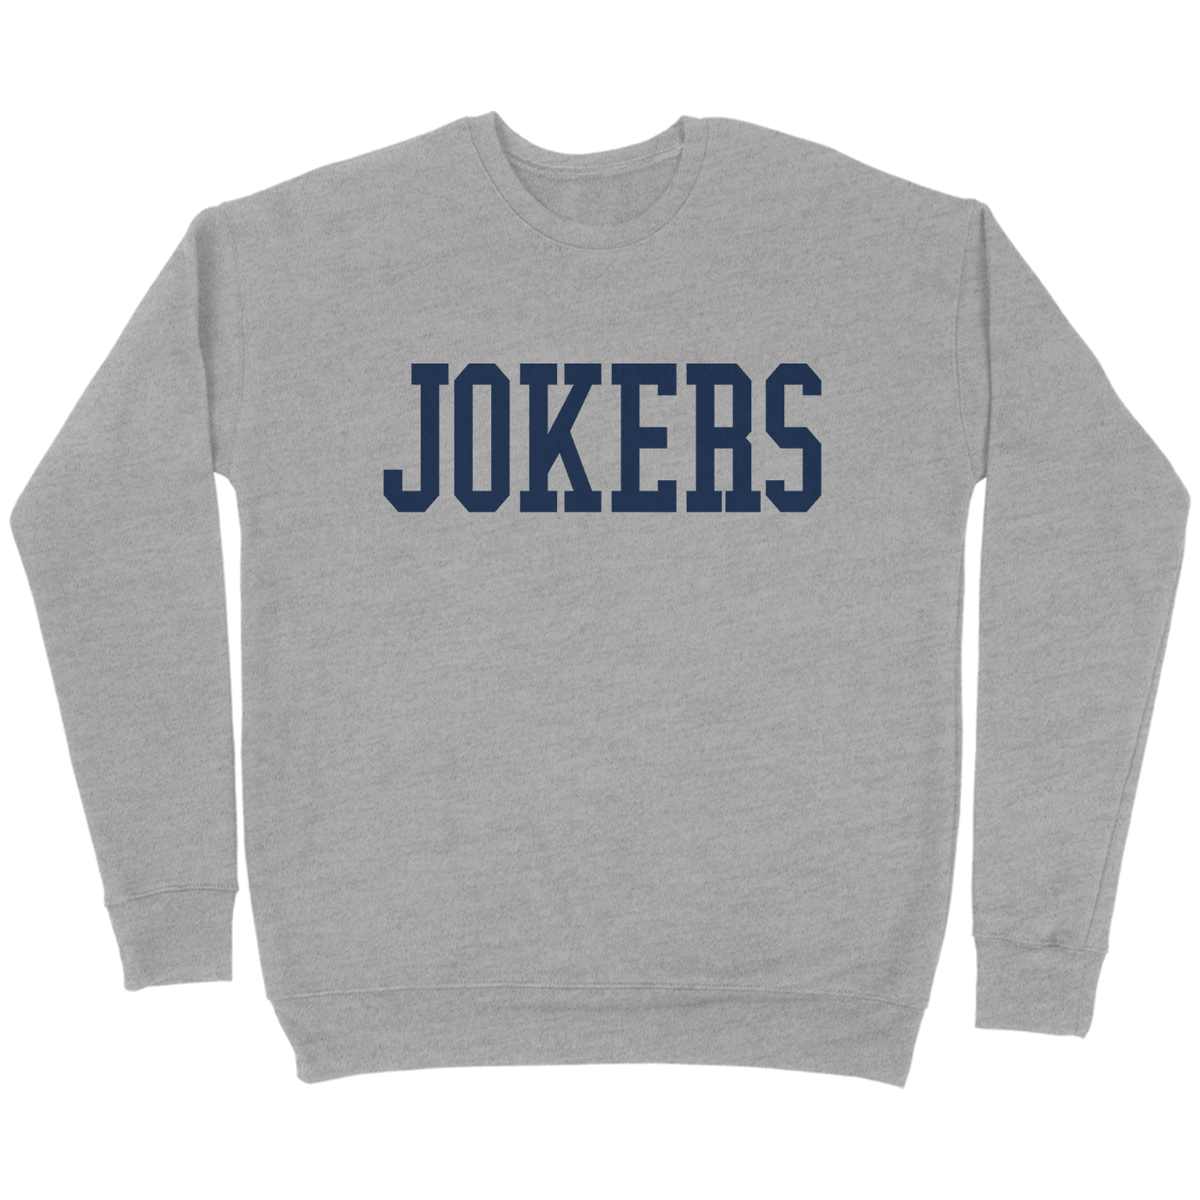 Jokers Collegiate Crewneck Sweatshirt